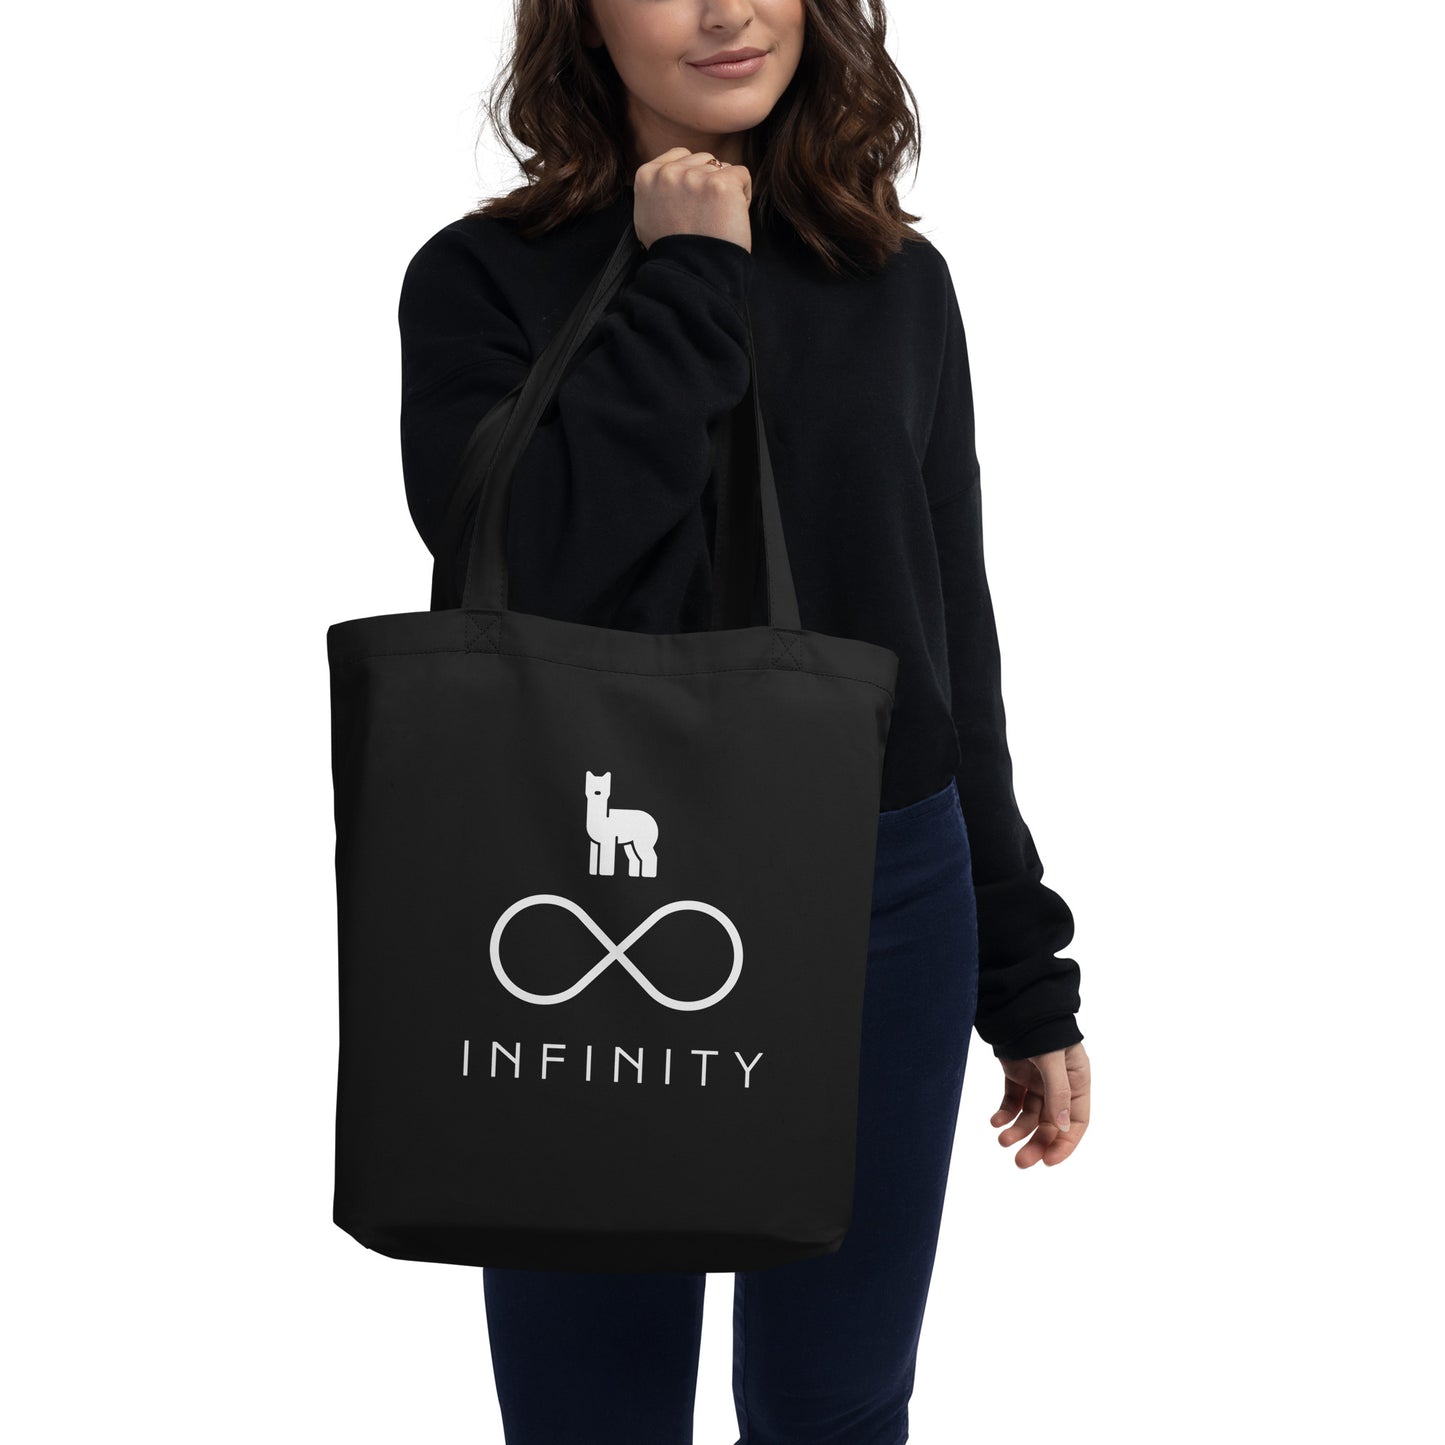 Infinity Eco Tote Bag